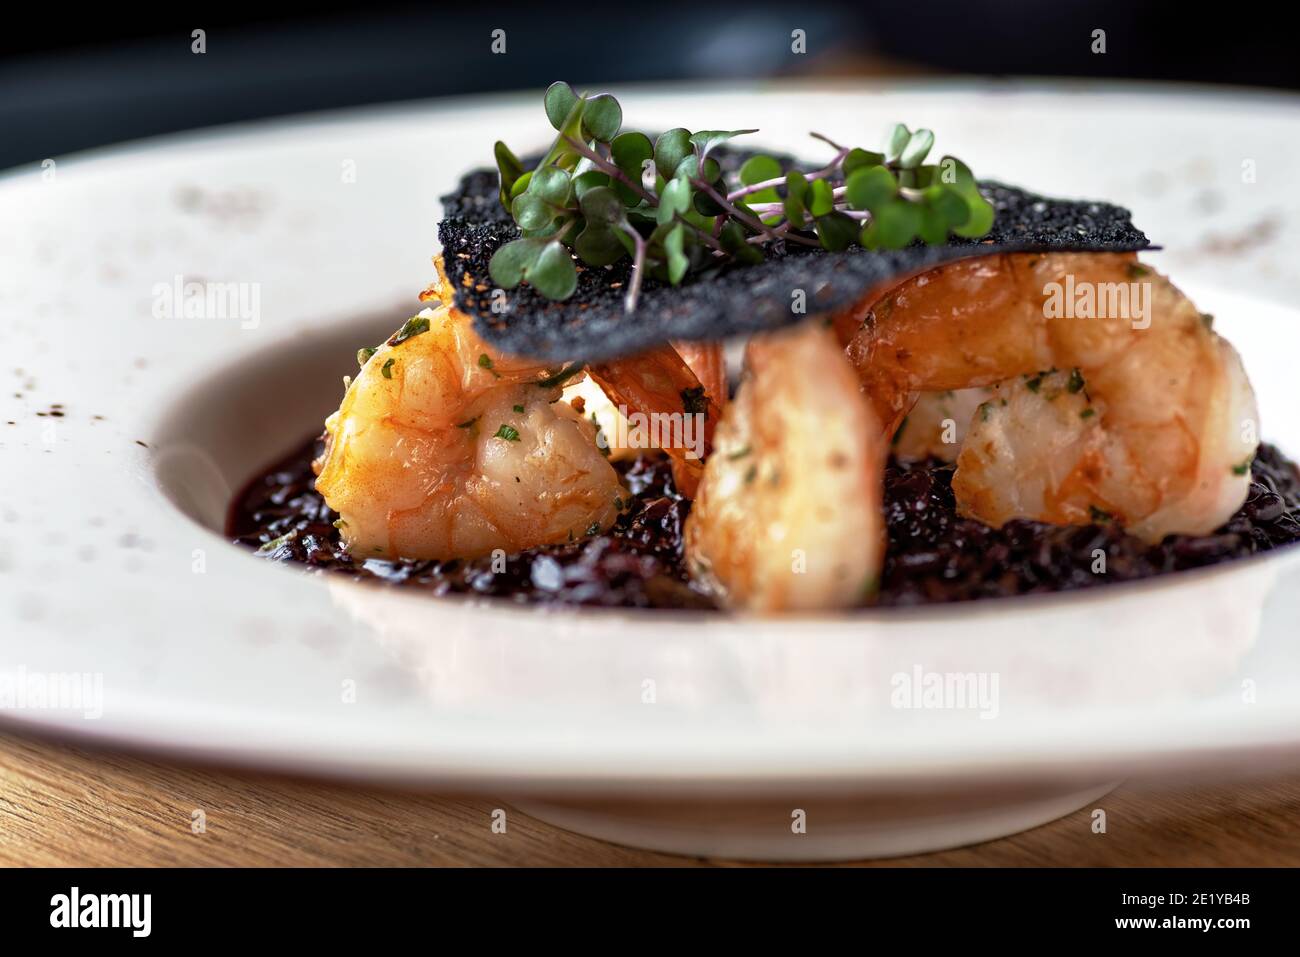 Risotto mit schwarzem Reis. Garnelen Risotto auf einem weißen Teller auf dem Tisch, serviert in einem Restaurant, Menü Food-Konzept. Stockfoto